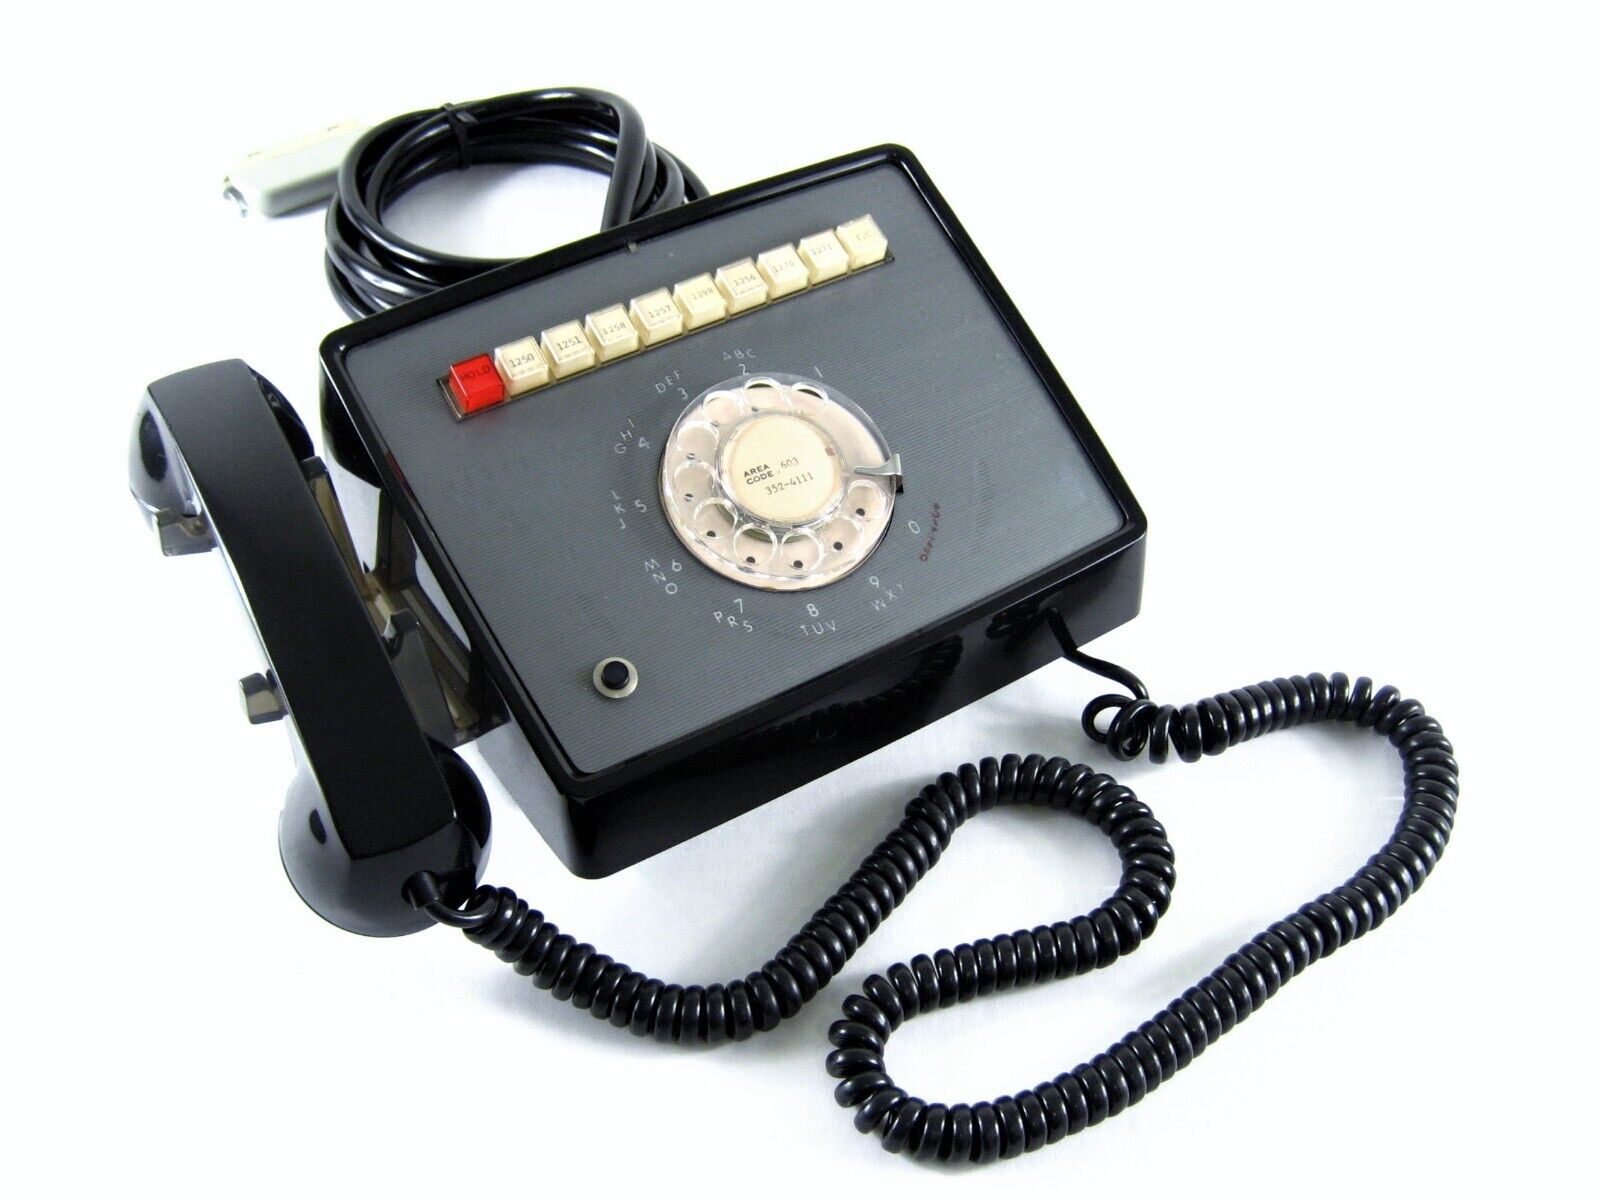 Vintage 1979 ITT Telephone 0830 Multi-Line Rotary Telephone